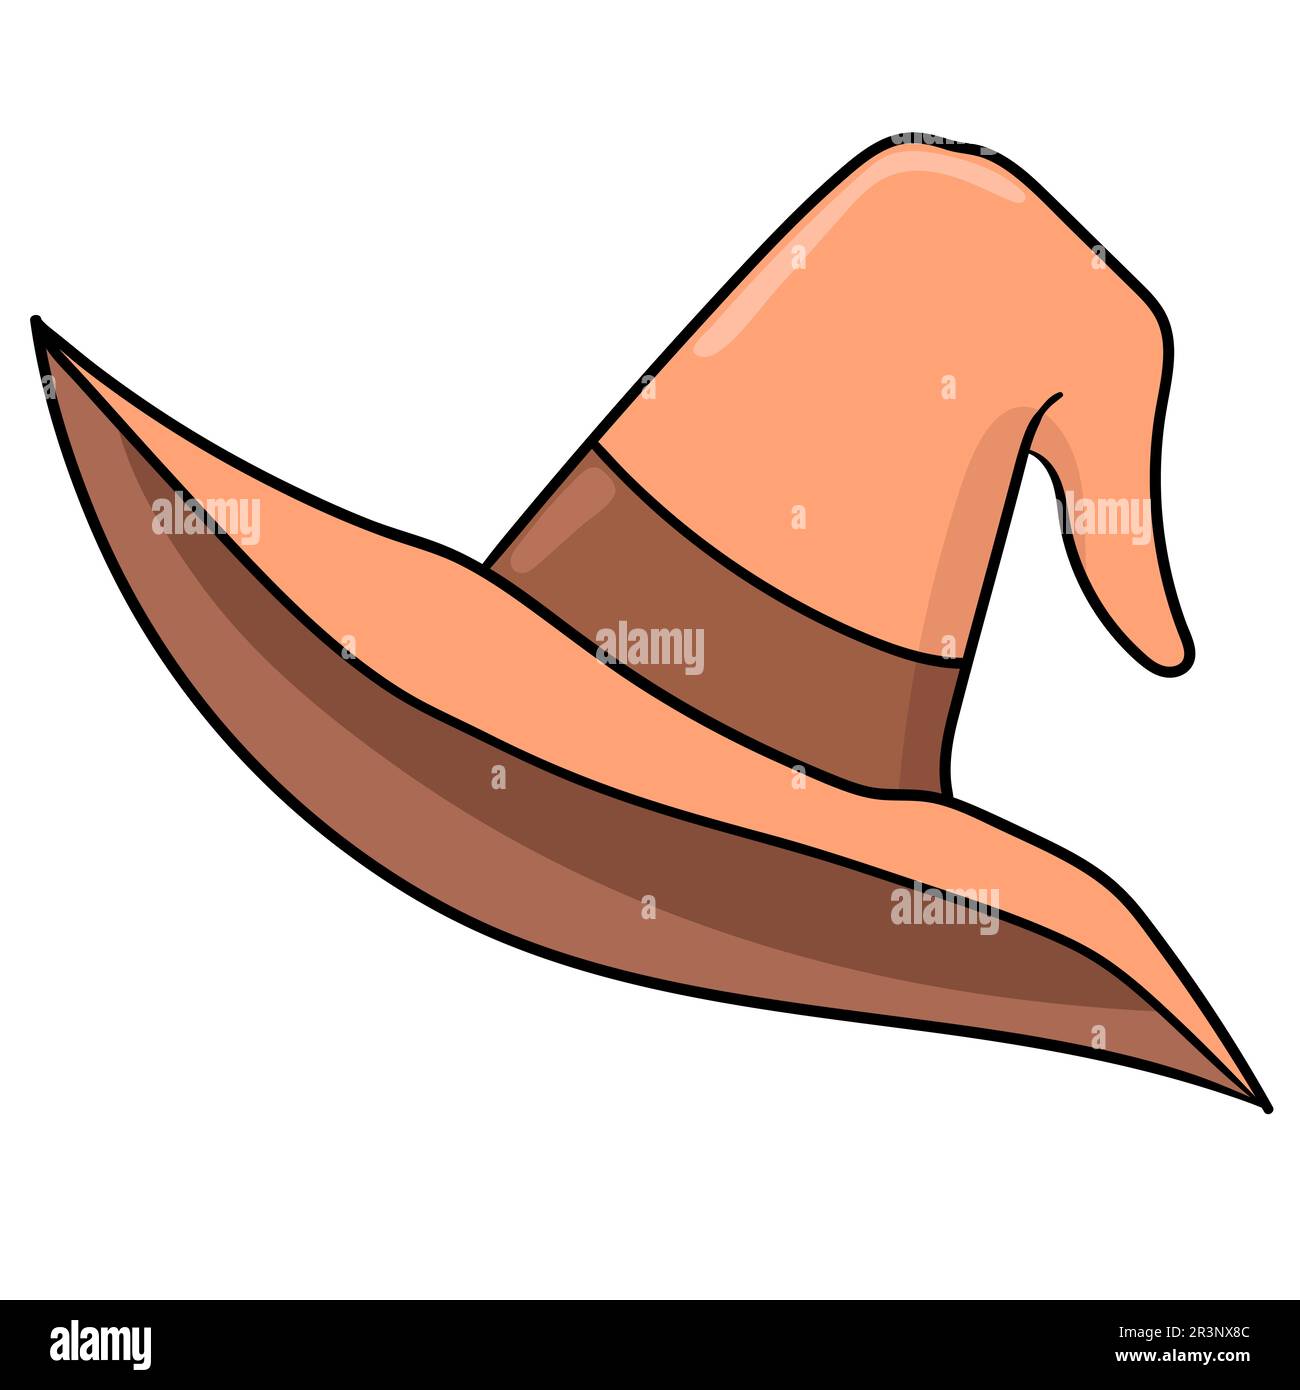 Orange witch hat. doodle icon image Stock Photo